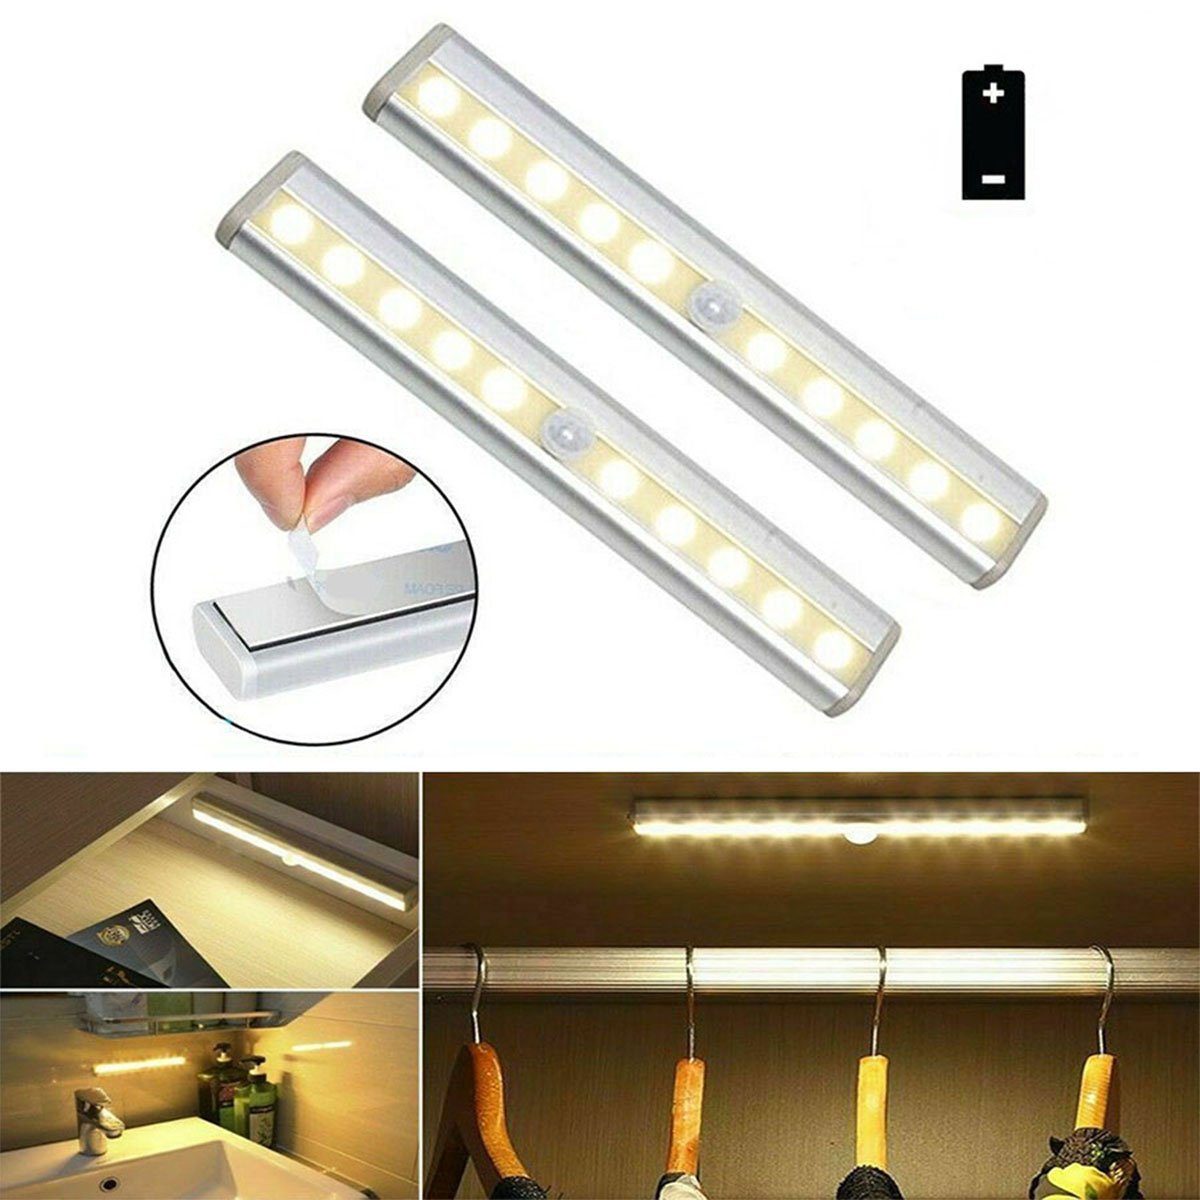 COB-LED-Lichtleiste mit Bewegungsmelder, ideal für Beleuchtung in  Schränken, Treppenhäuser, Küchenzeilen, einstellbarer Lichtstrahl, LED  Leuchten & Scheinwerfer, LEDs,Taschenlampen, Lichttechnik